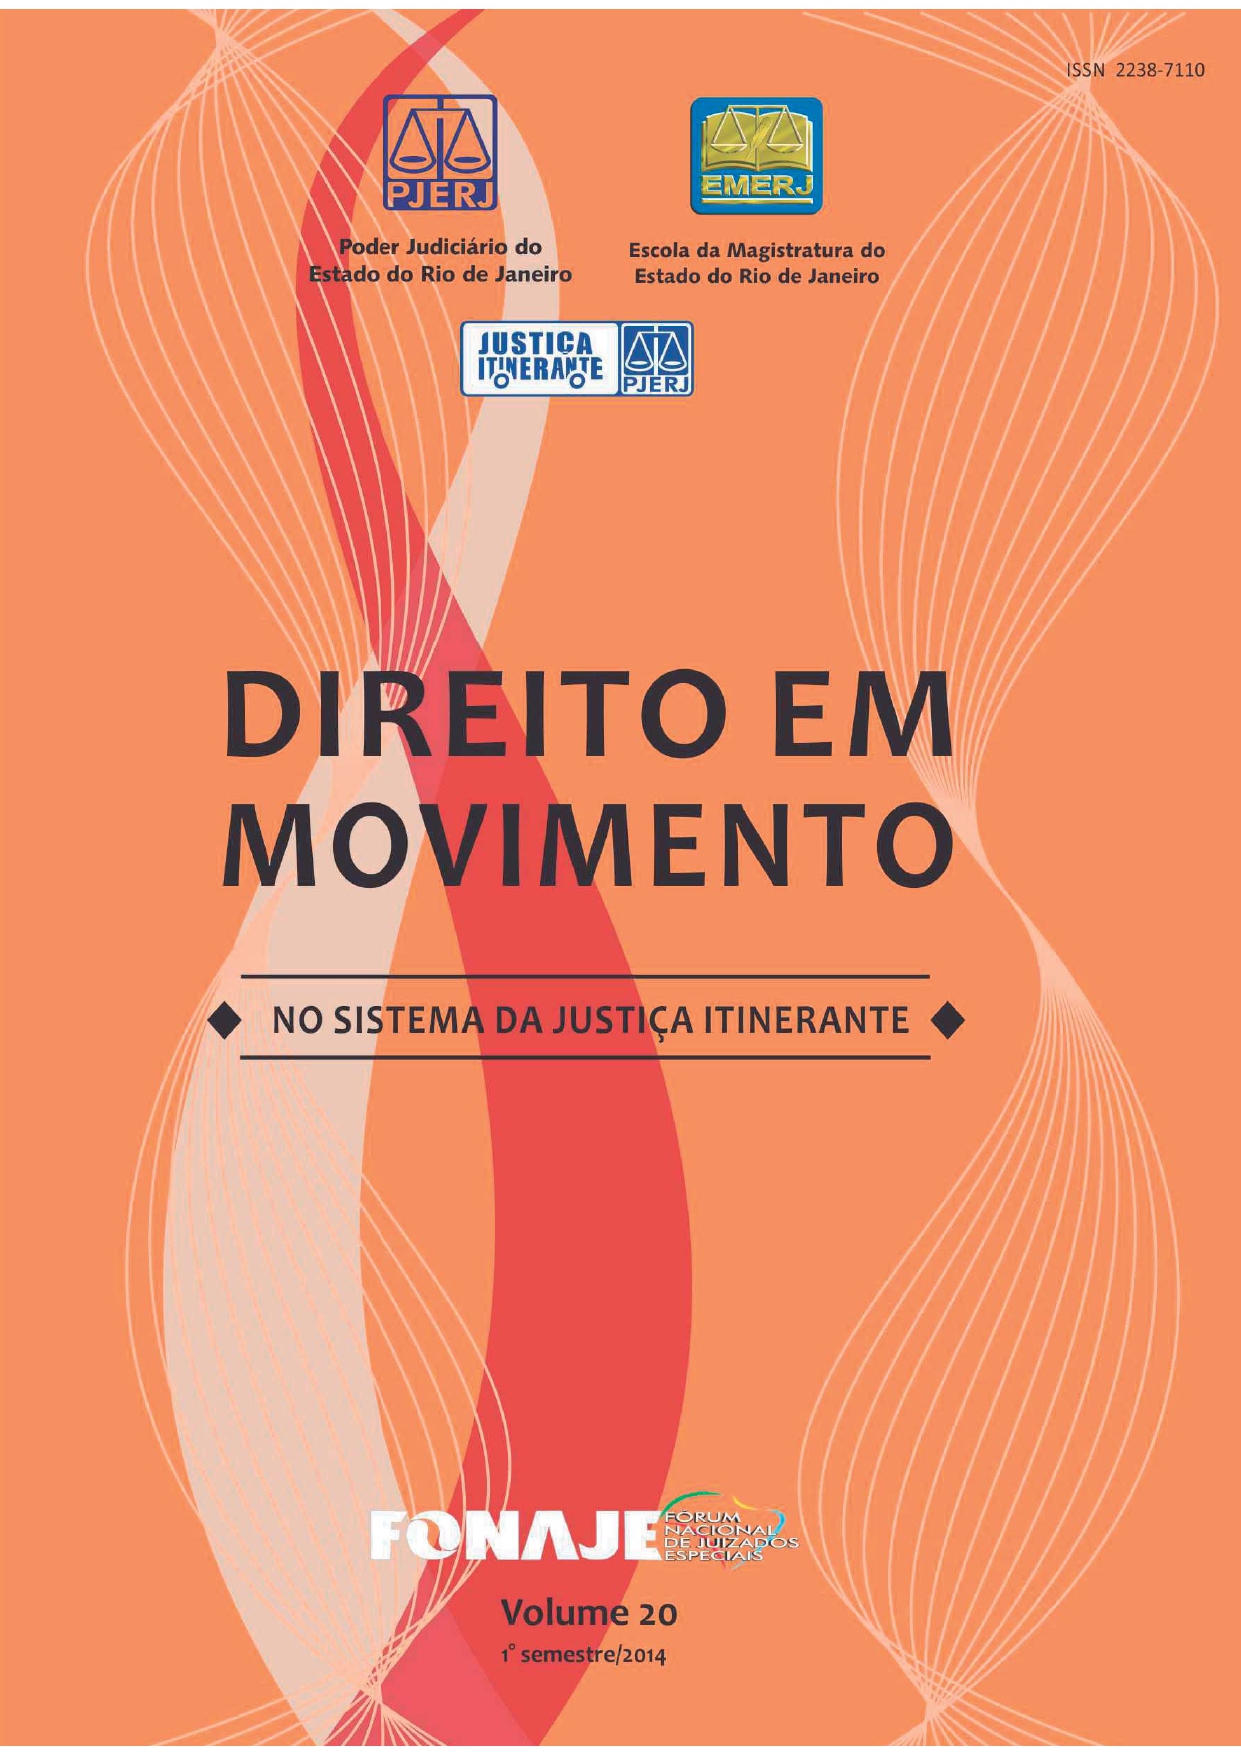 					Afficher Vol. 20 (2014): Revista Direito em Movimento (Numeração antiga)
				